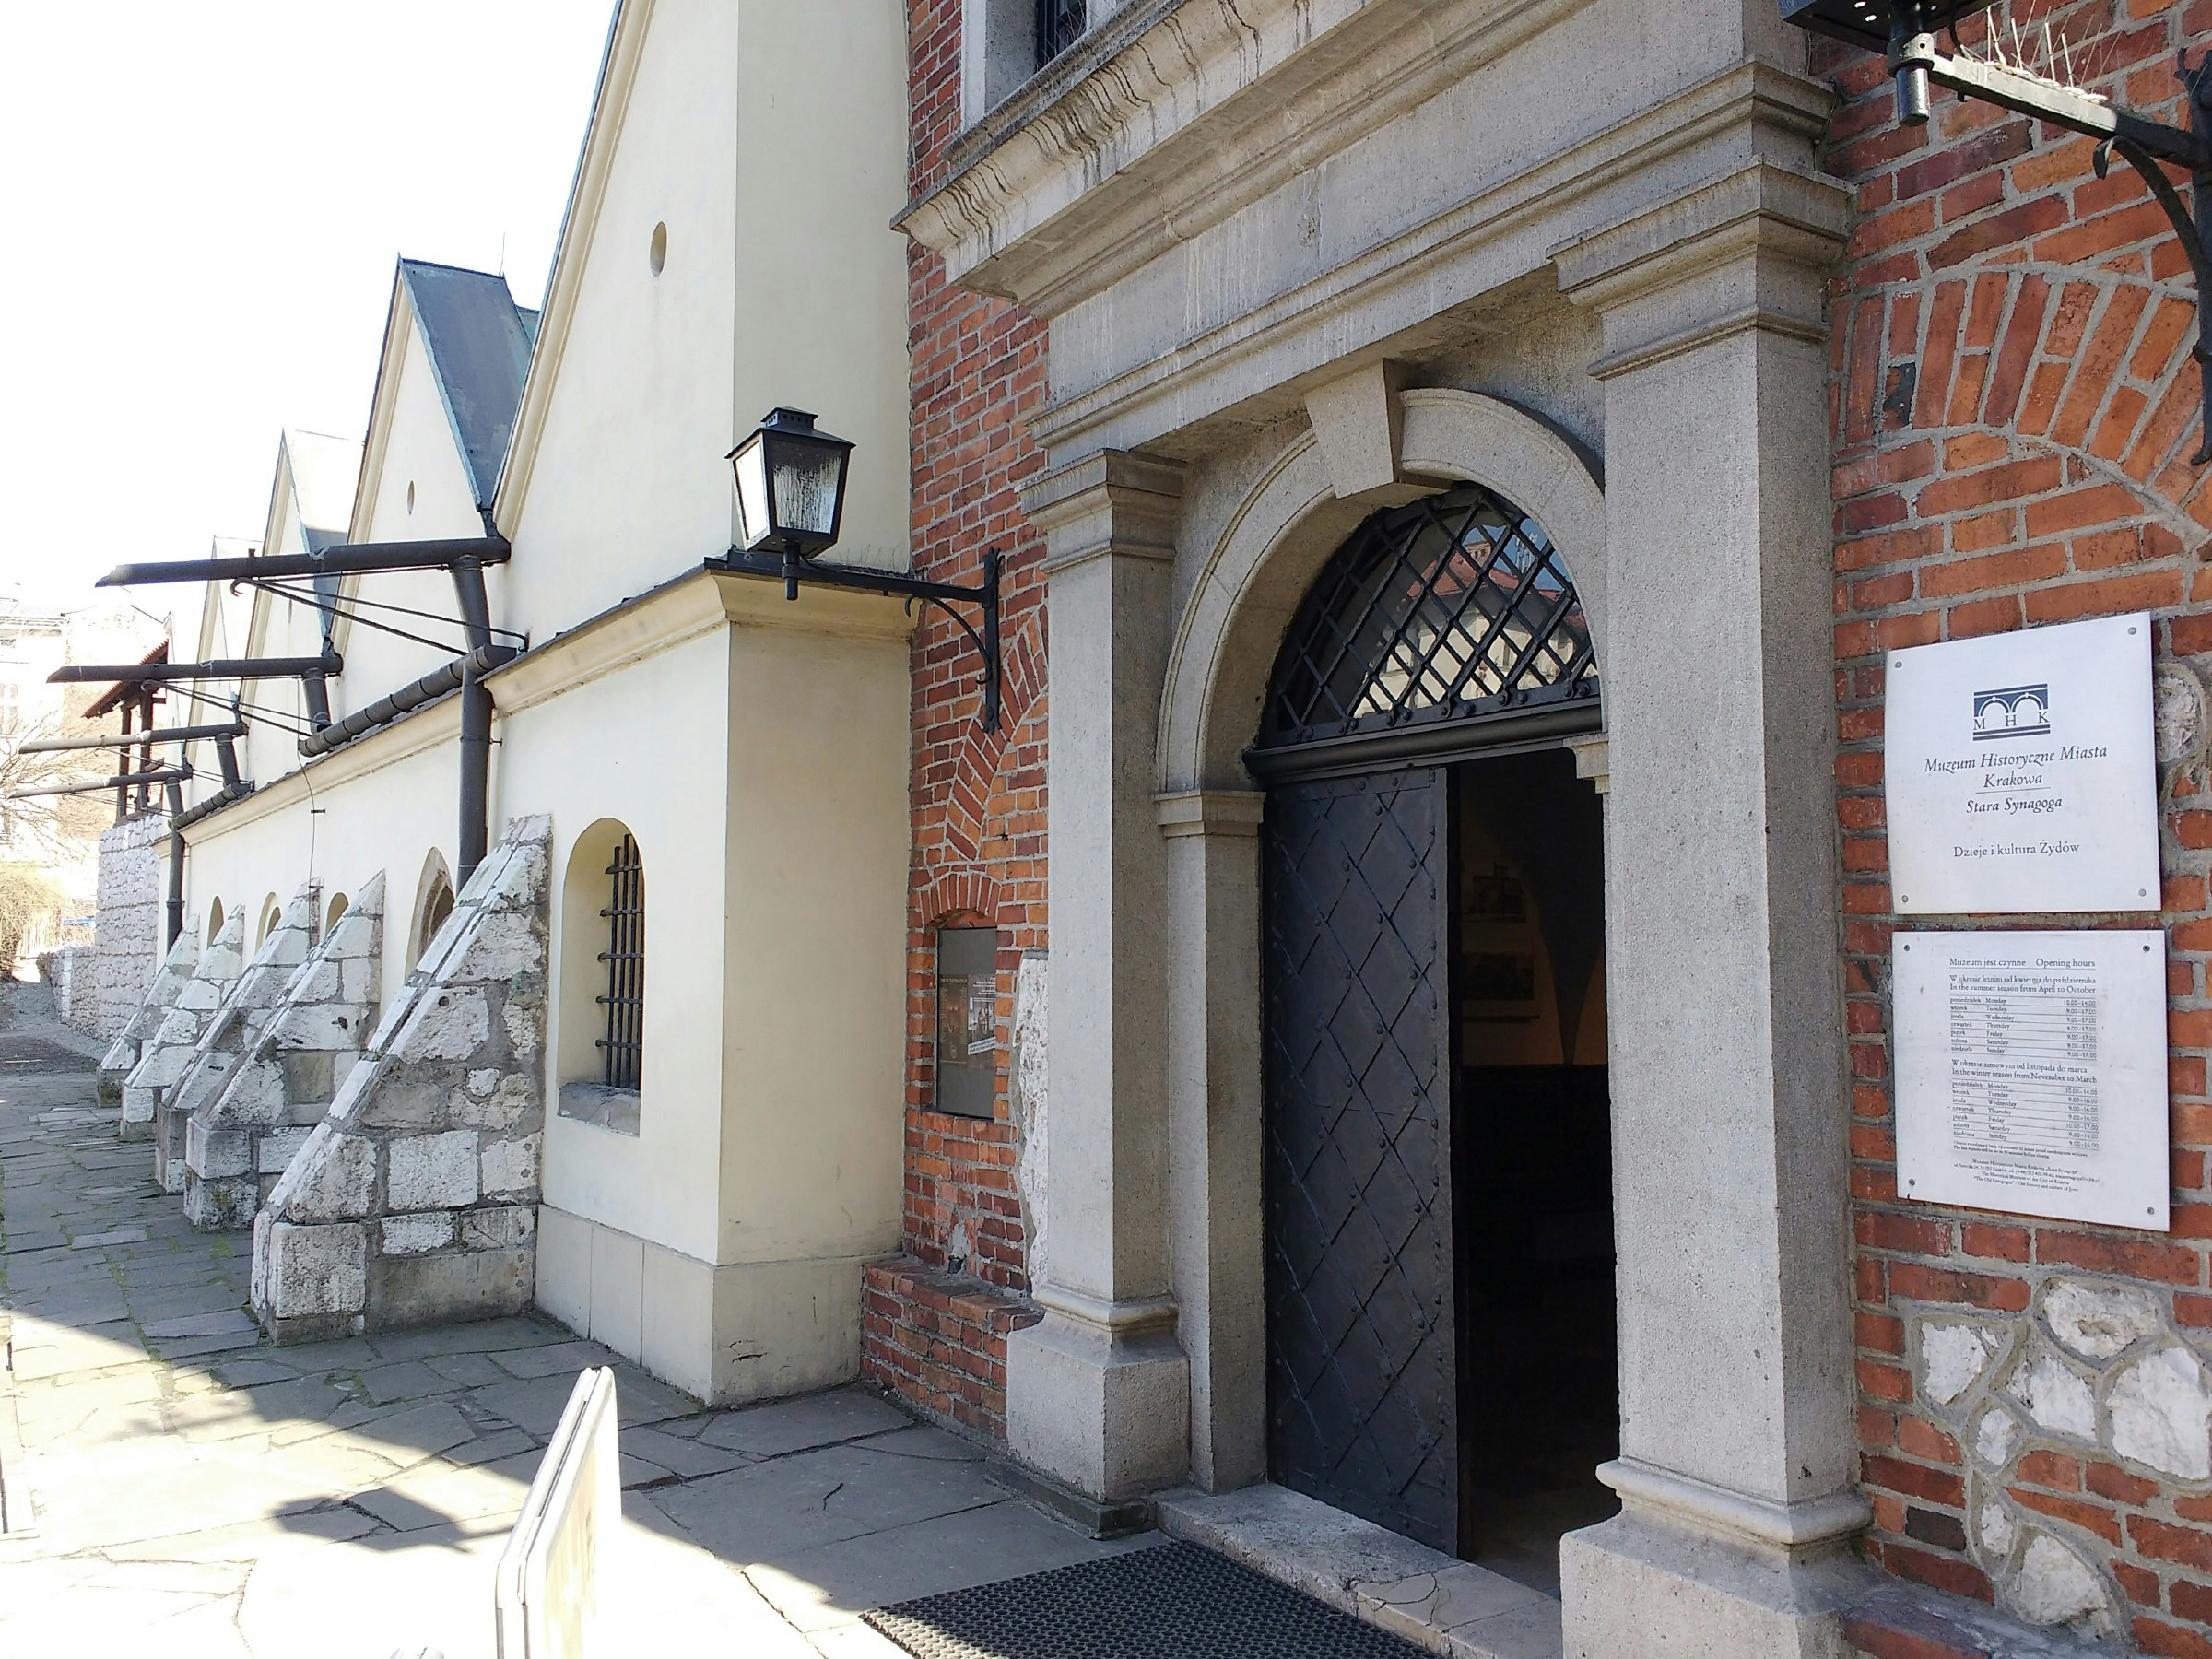 Galicia Jewish Museum